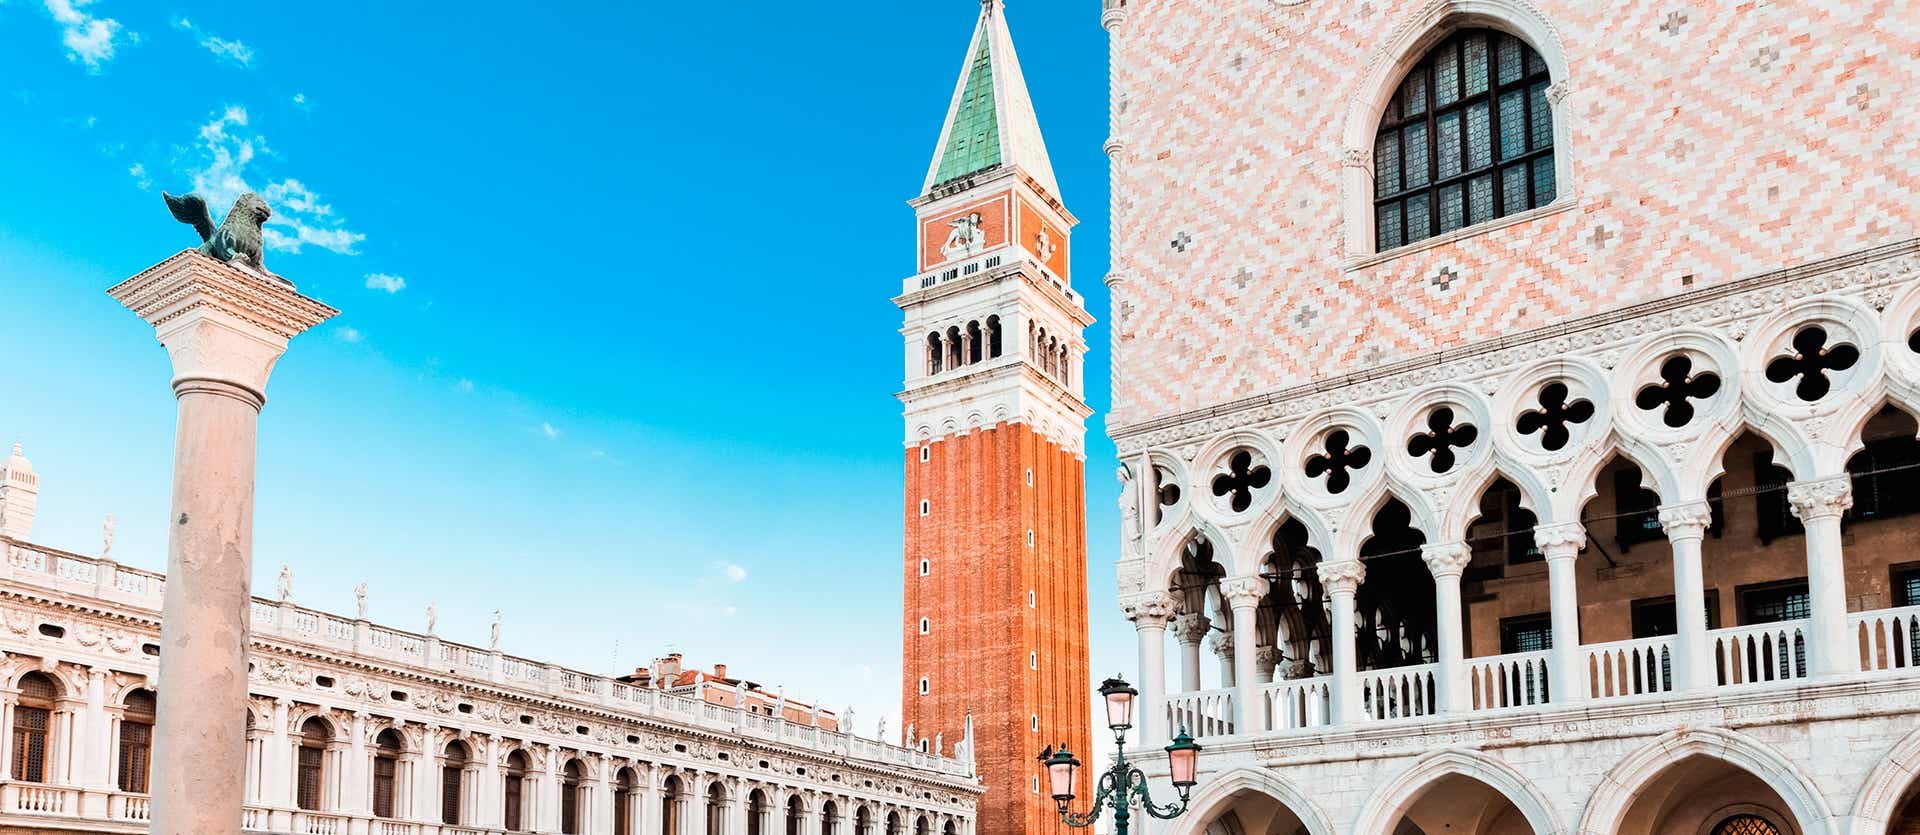 Piazza San Marco <span class="iconos separador"></span> Venice